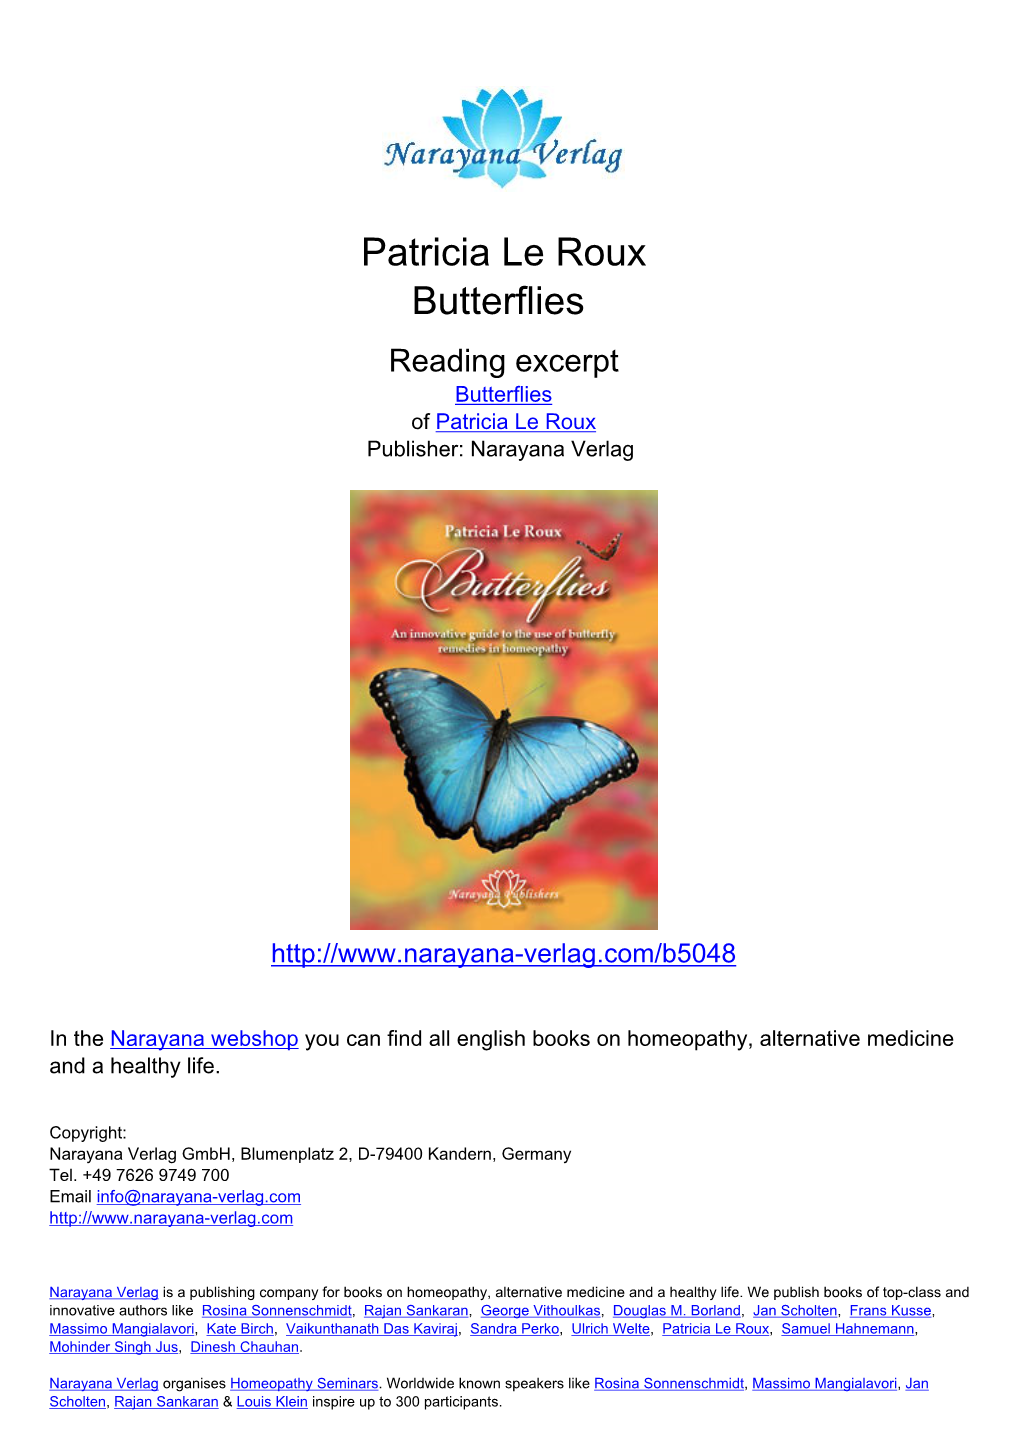 Patricia Le Roux Butterflies Reading Excerpt Butterflies of Patricia Le Roux Publisher: Narayana Verlag